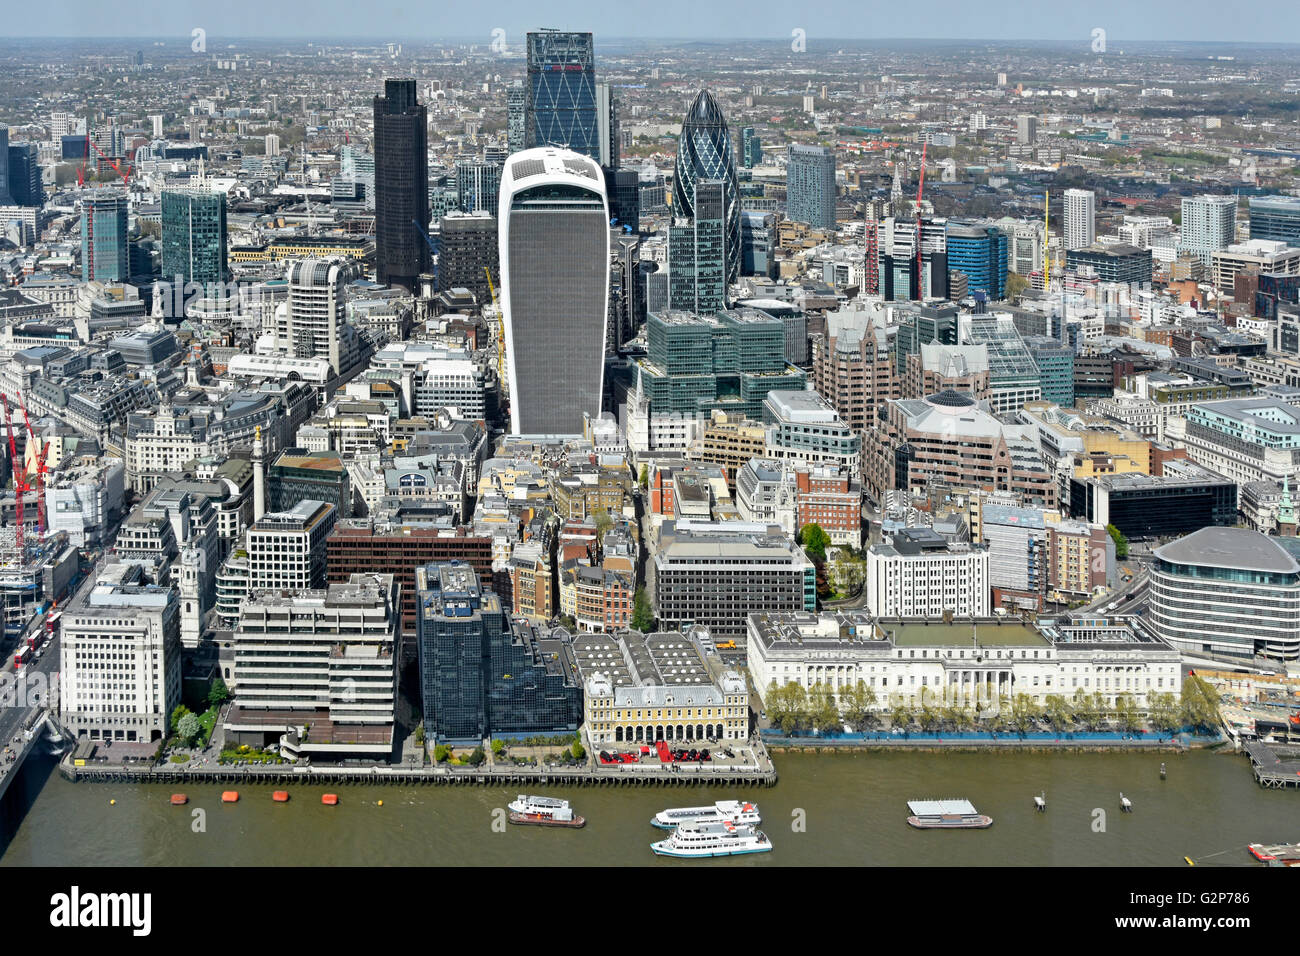 Der Londoner Wahrzeichen Luftaufnahme von oben den Blick auf London Skyline moderne Wolkenkratzer Stadtbild in eine urbane Landschaft Stockfoto